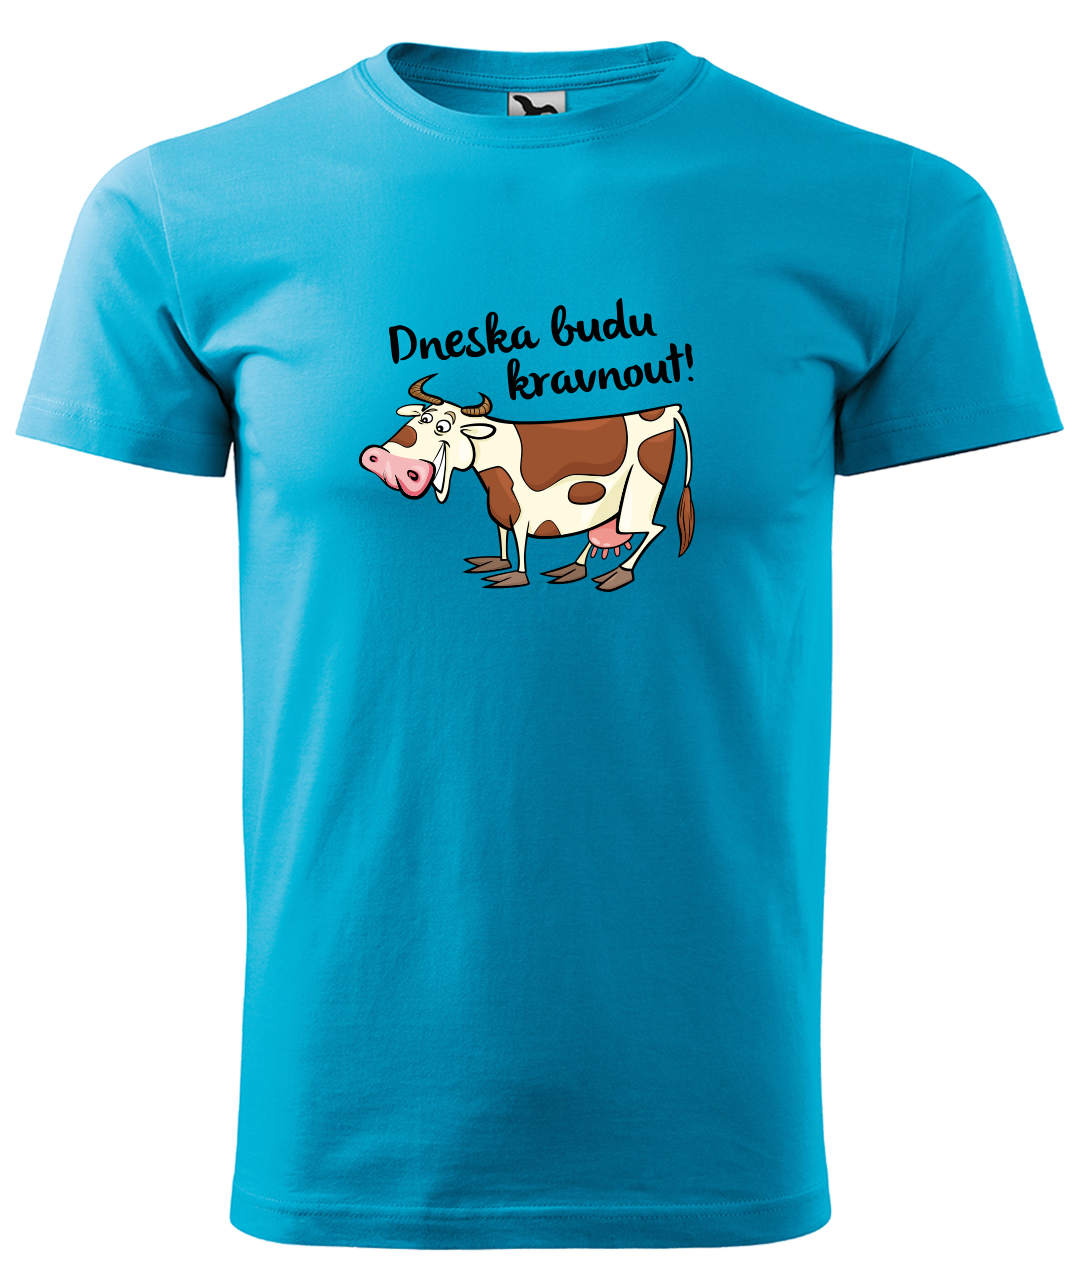 Dětské tričko s krávou - Dneska budu kravnout! Velikost: 4 roky / 110 cm, Barva: Tyrkysová (44), Délka rukávu: Krátký rukáv